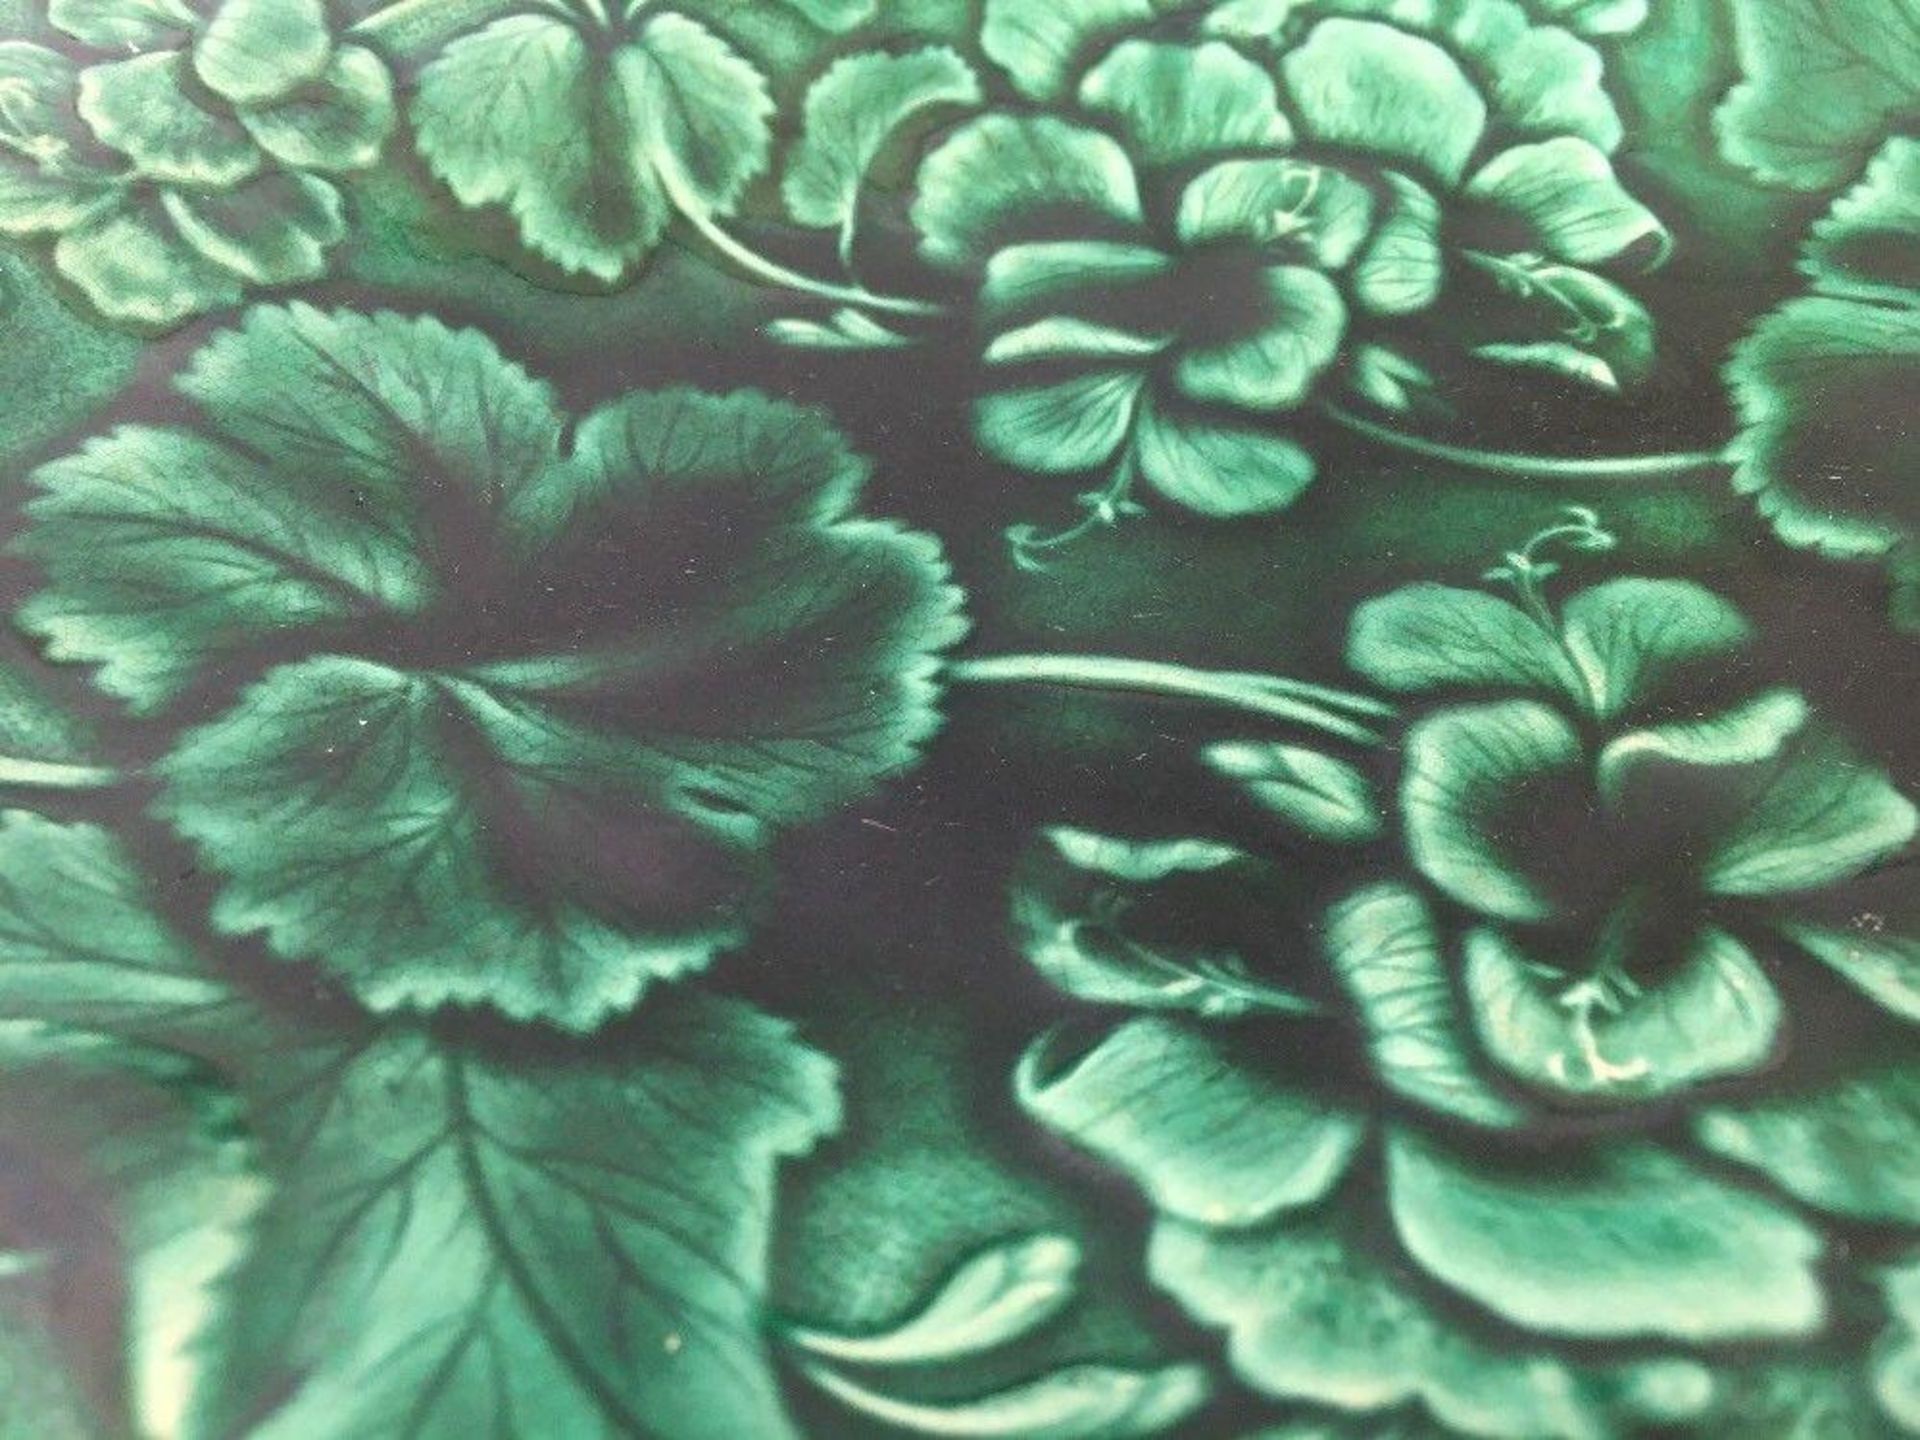 Antique Hope & Carter Green Geranium Leaf Majolica Handled Platter/Plate Dish - Image 3 of 4